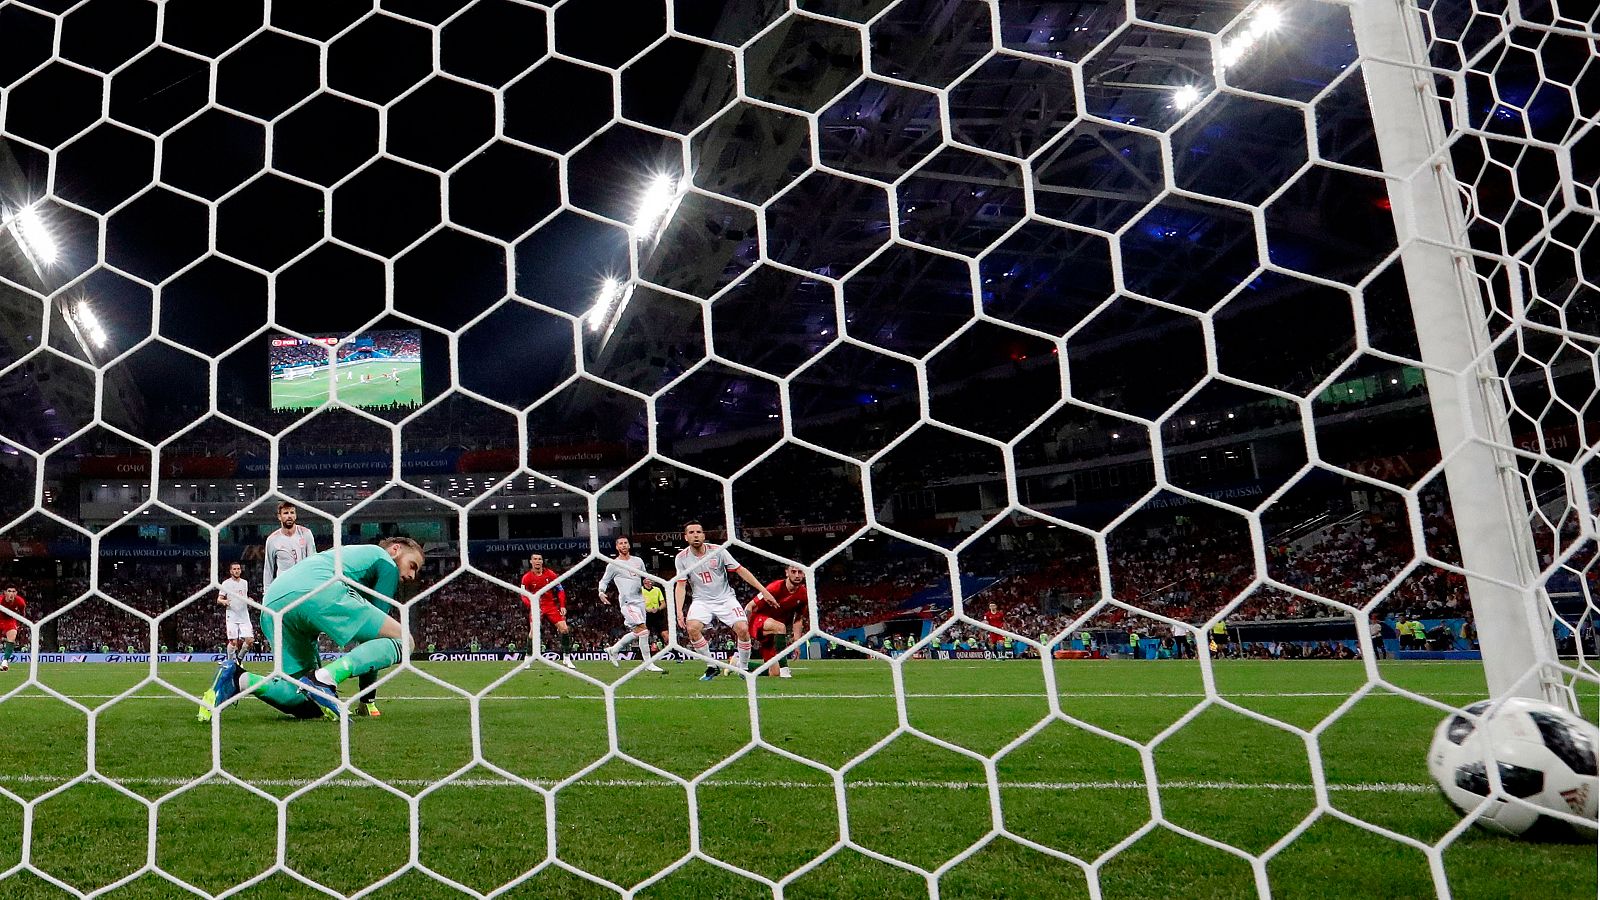 Redes Mundial | Los goles del Mundial tienen un "toque" español